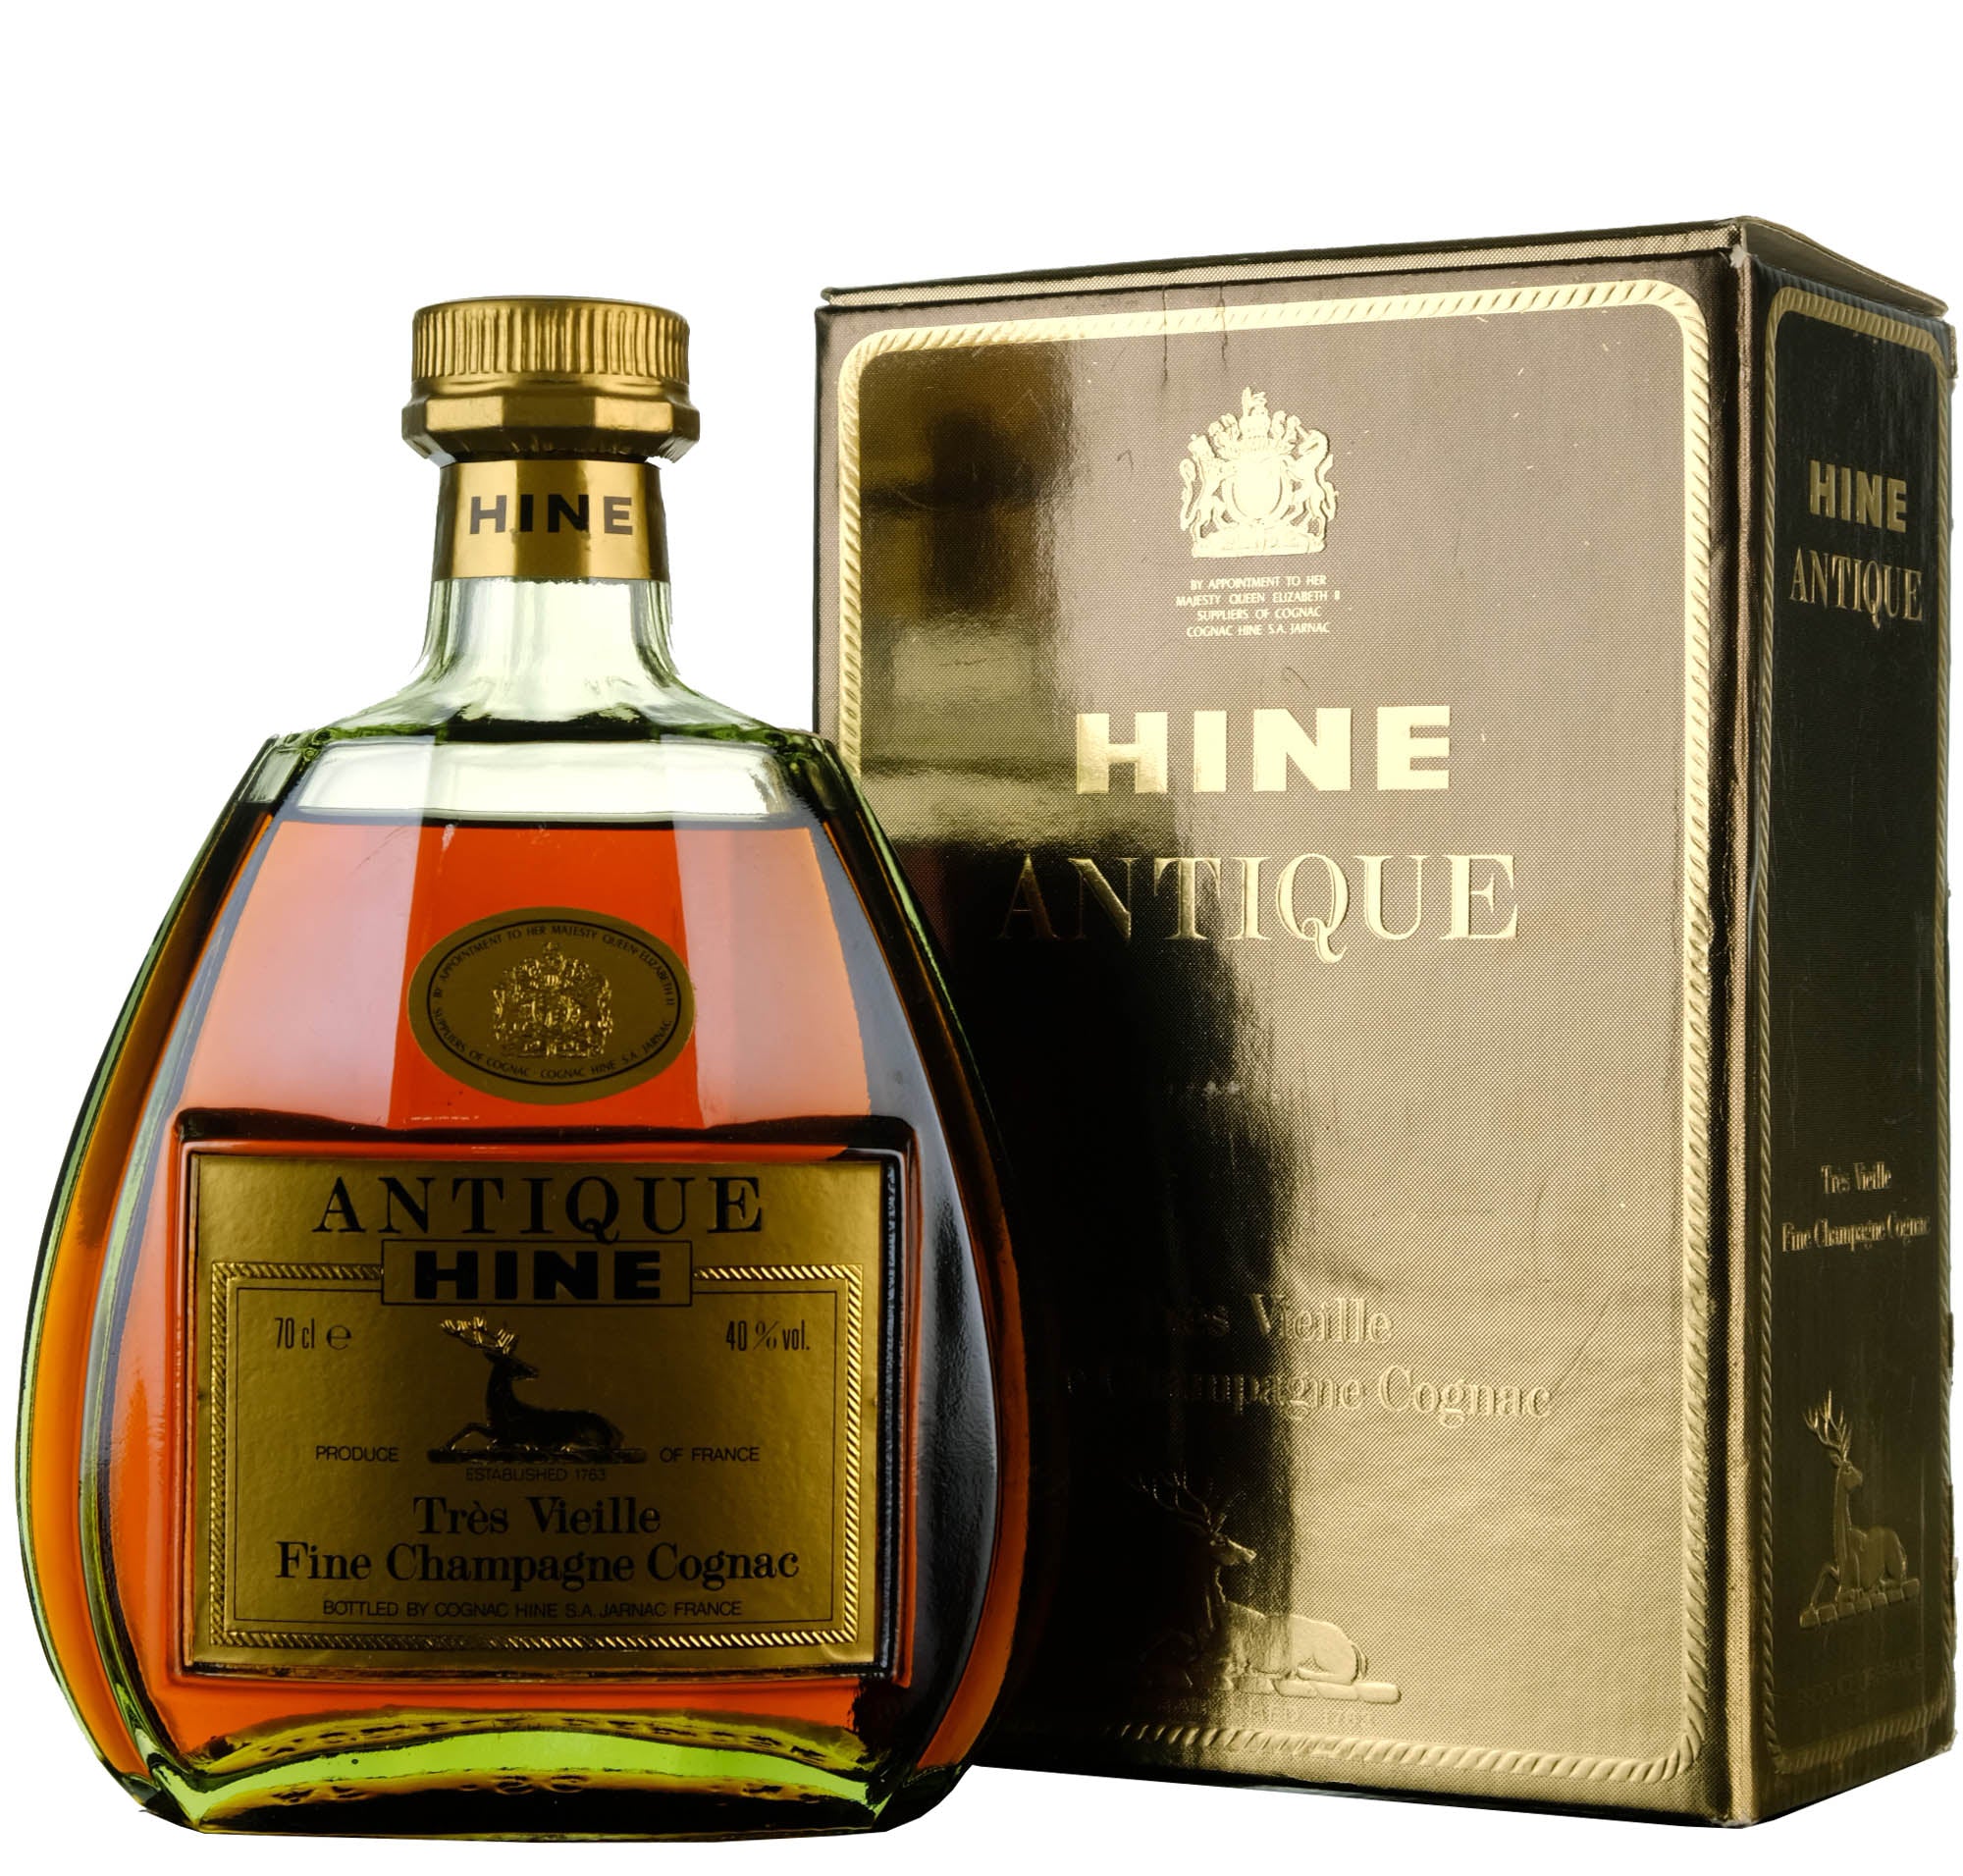 Hine Antique Tres Vieille Fine Champagne Cognac